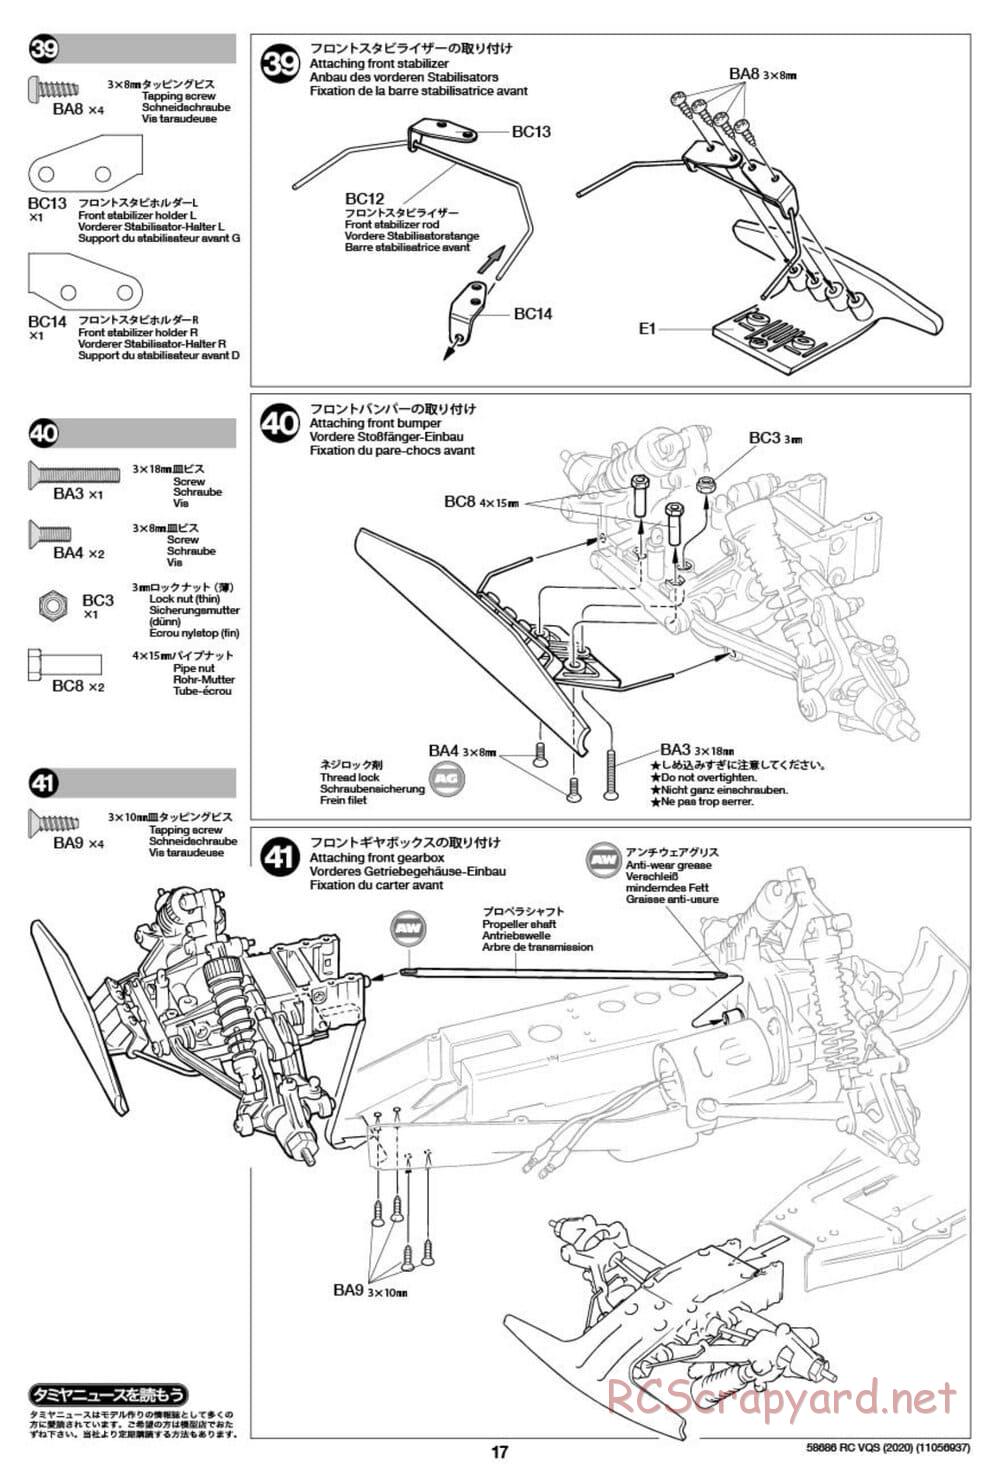 Tamiya - VQS (2020) - AV Chassis - Manual - Page 17